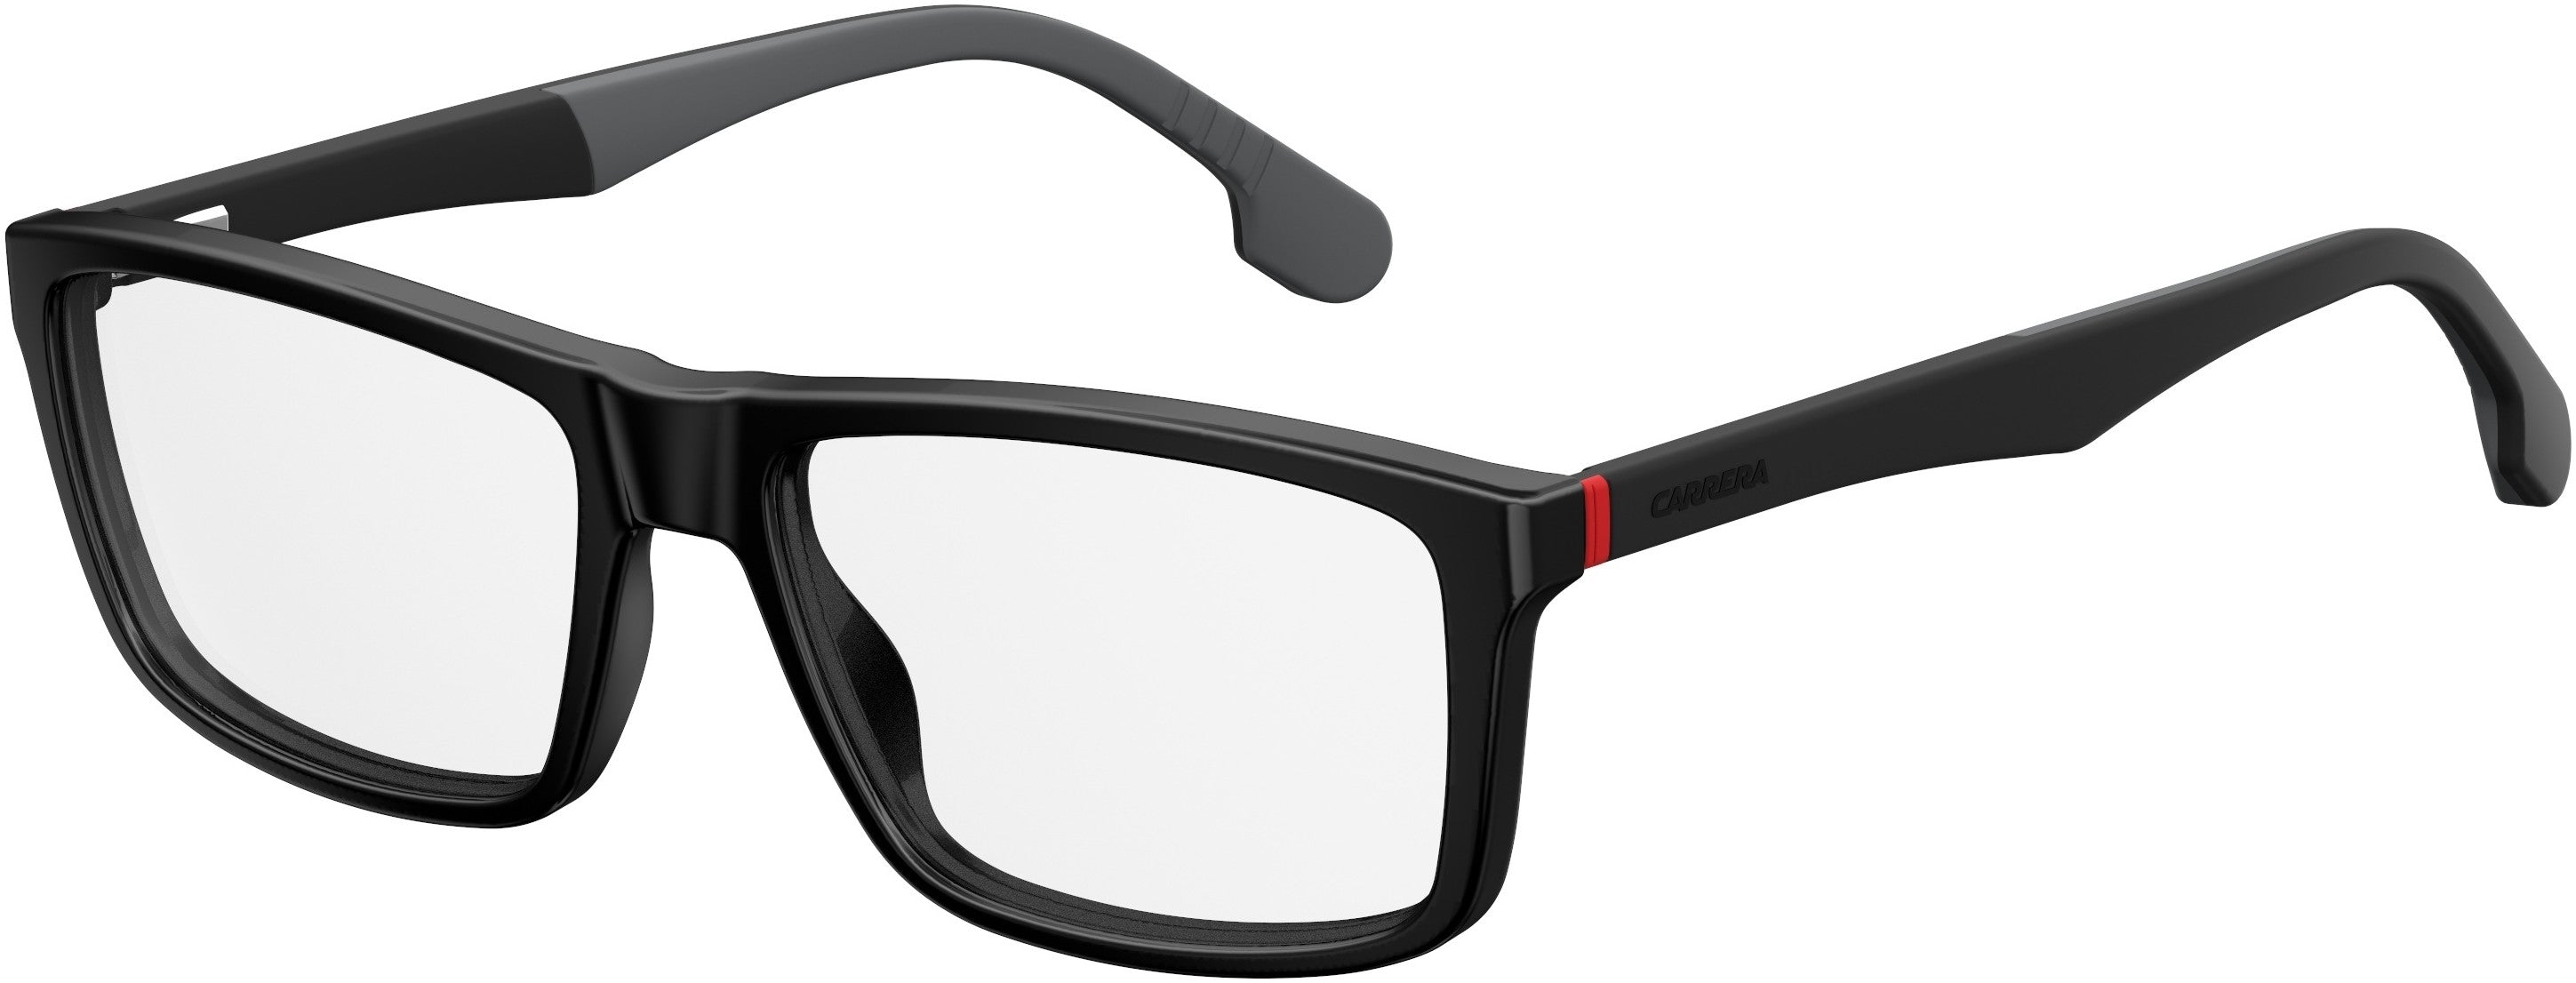  Carrera 8824/V Rectangular Eyeglasses 0807-0807  Black (00 Demo Lens)